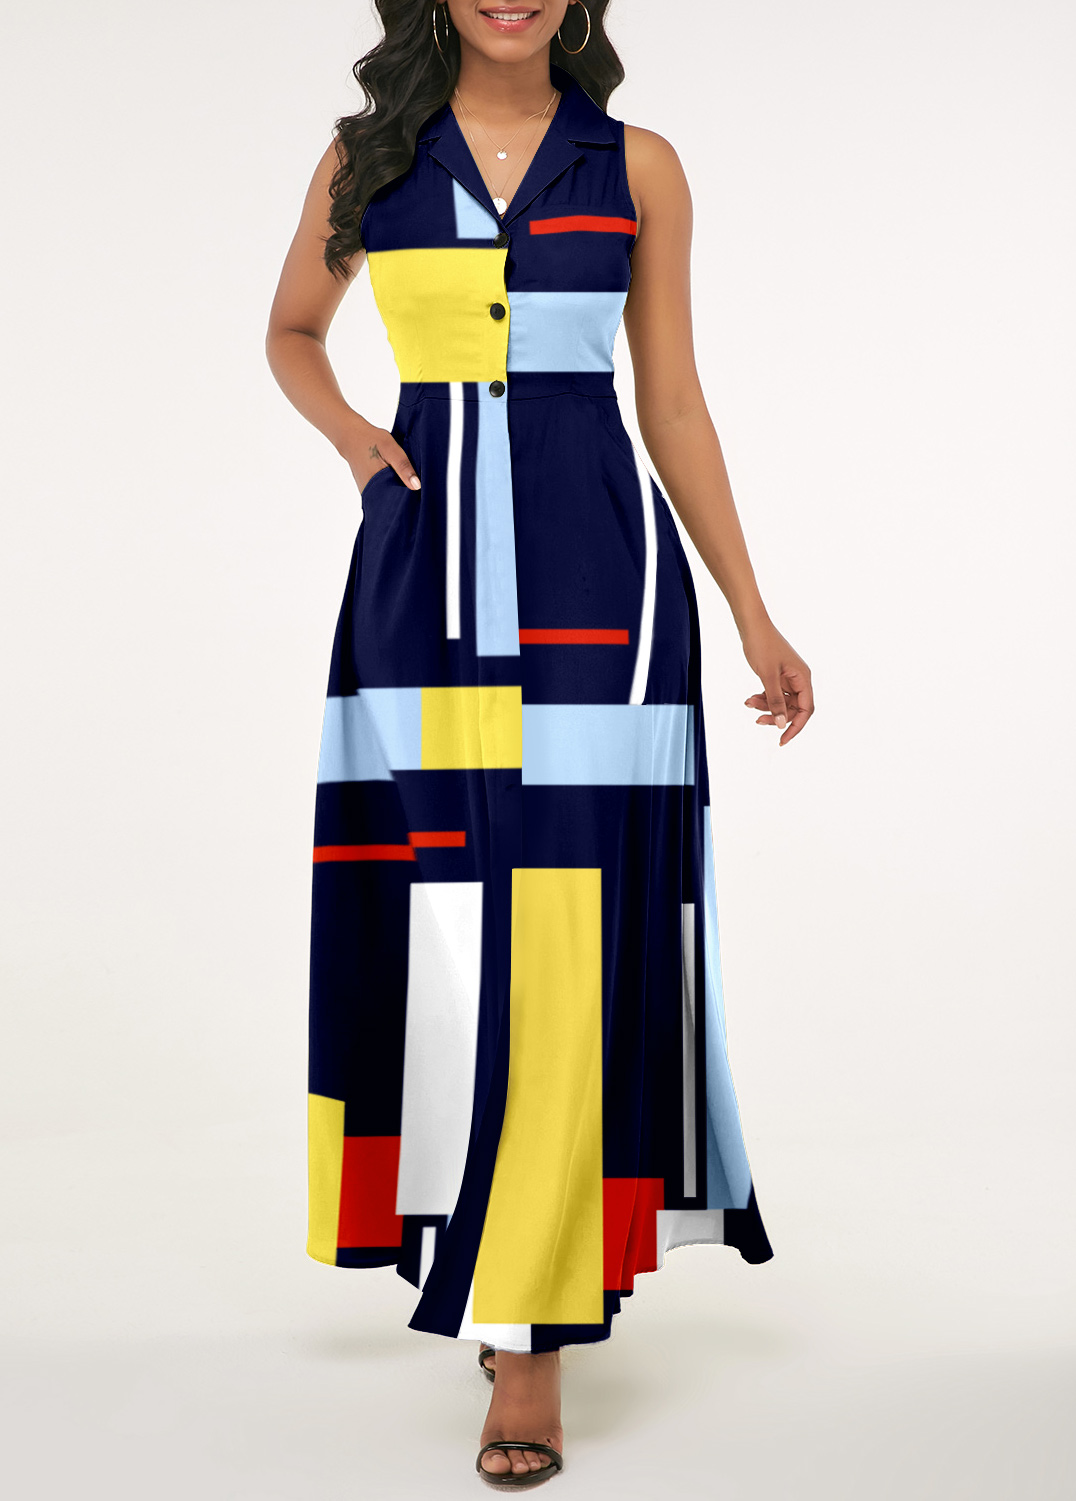 Marineblaues Kleid mit geometrischem Print und gekerbtem Kragen